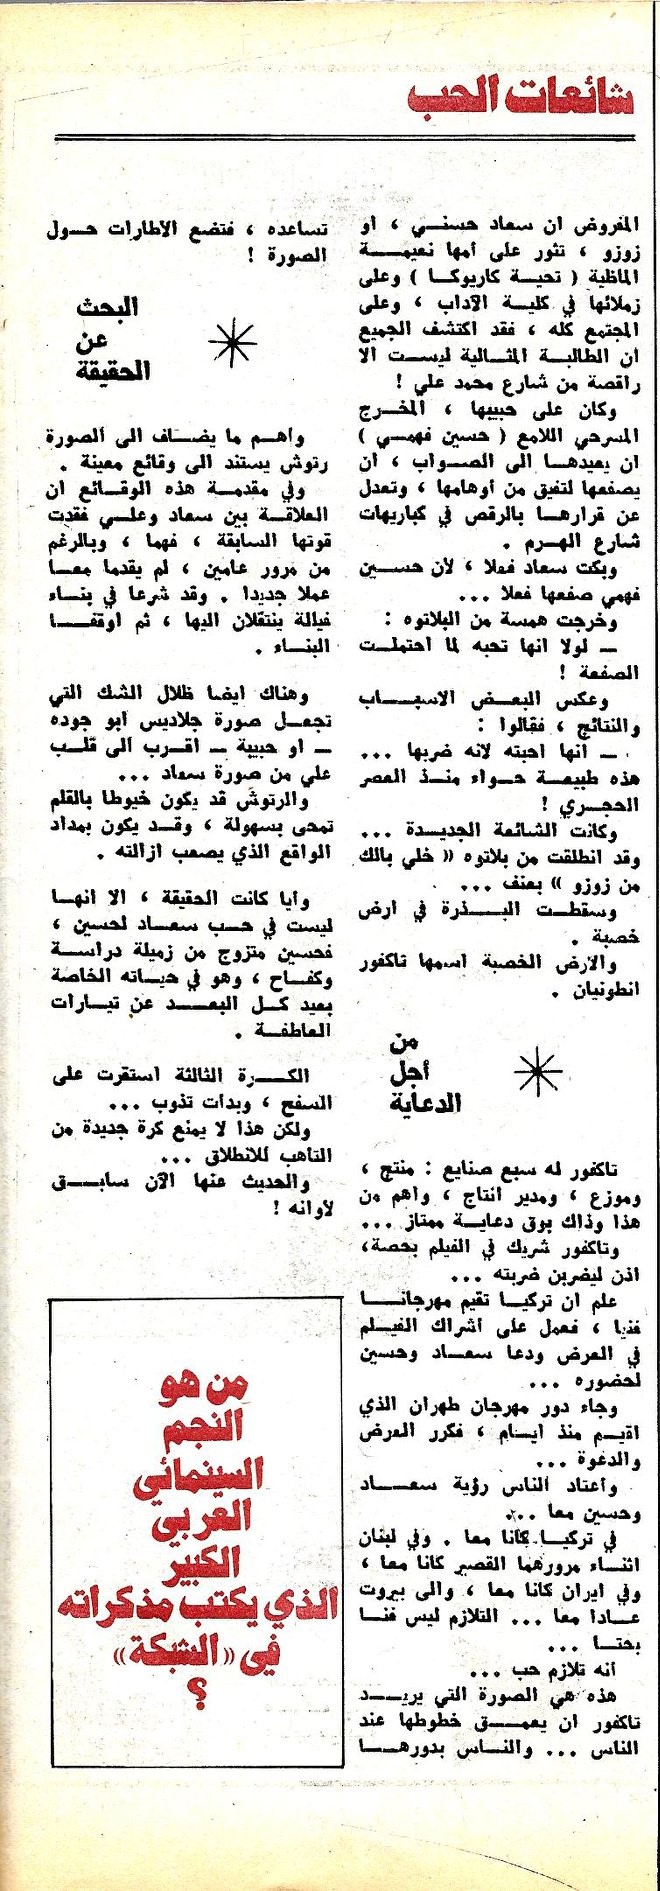 الحب - مقال صحفي : شائعات الحب تطارد سعاد حسني 1973 م 4173